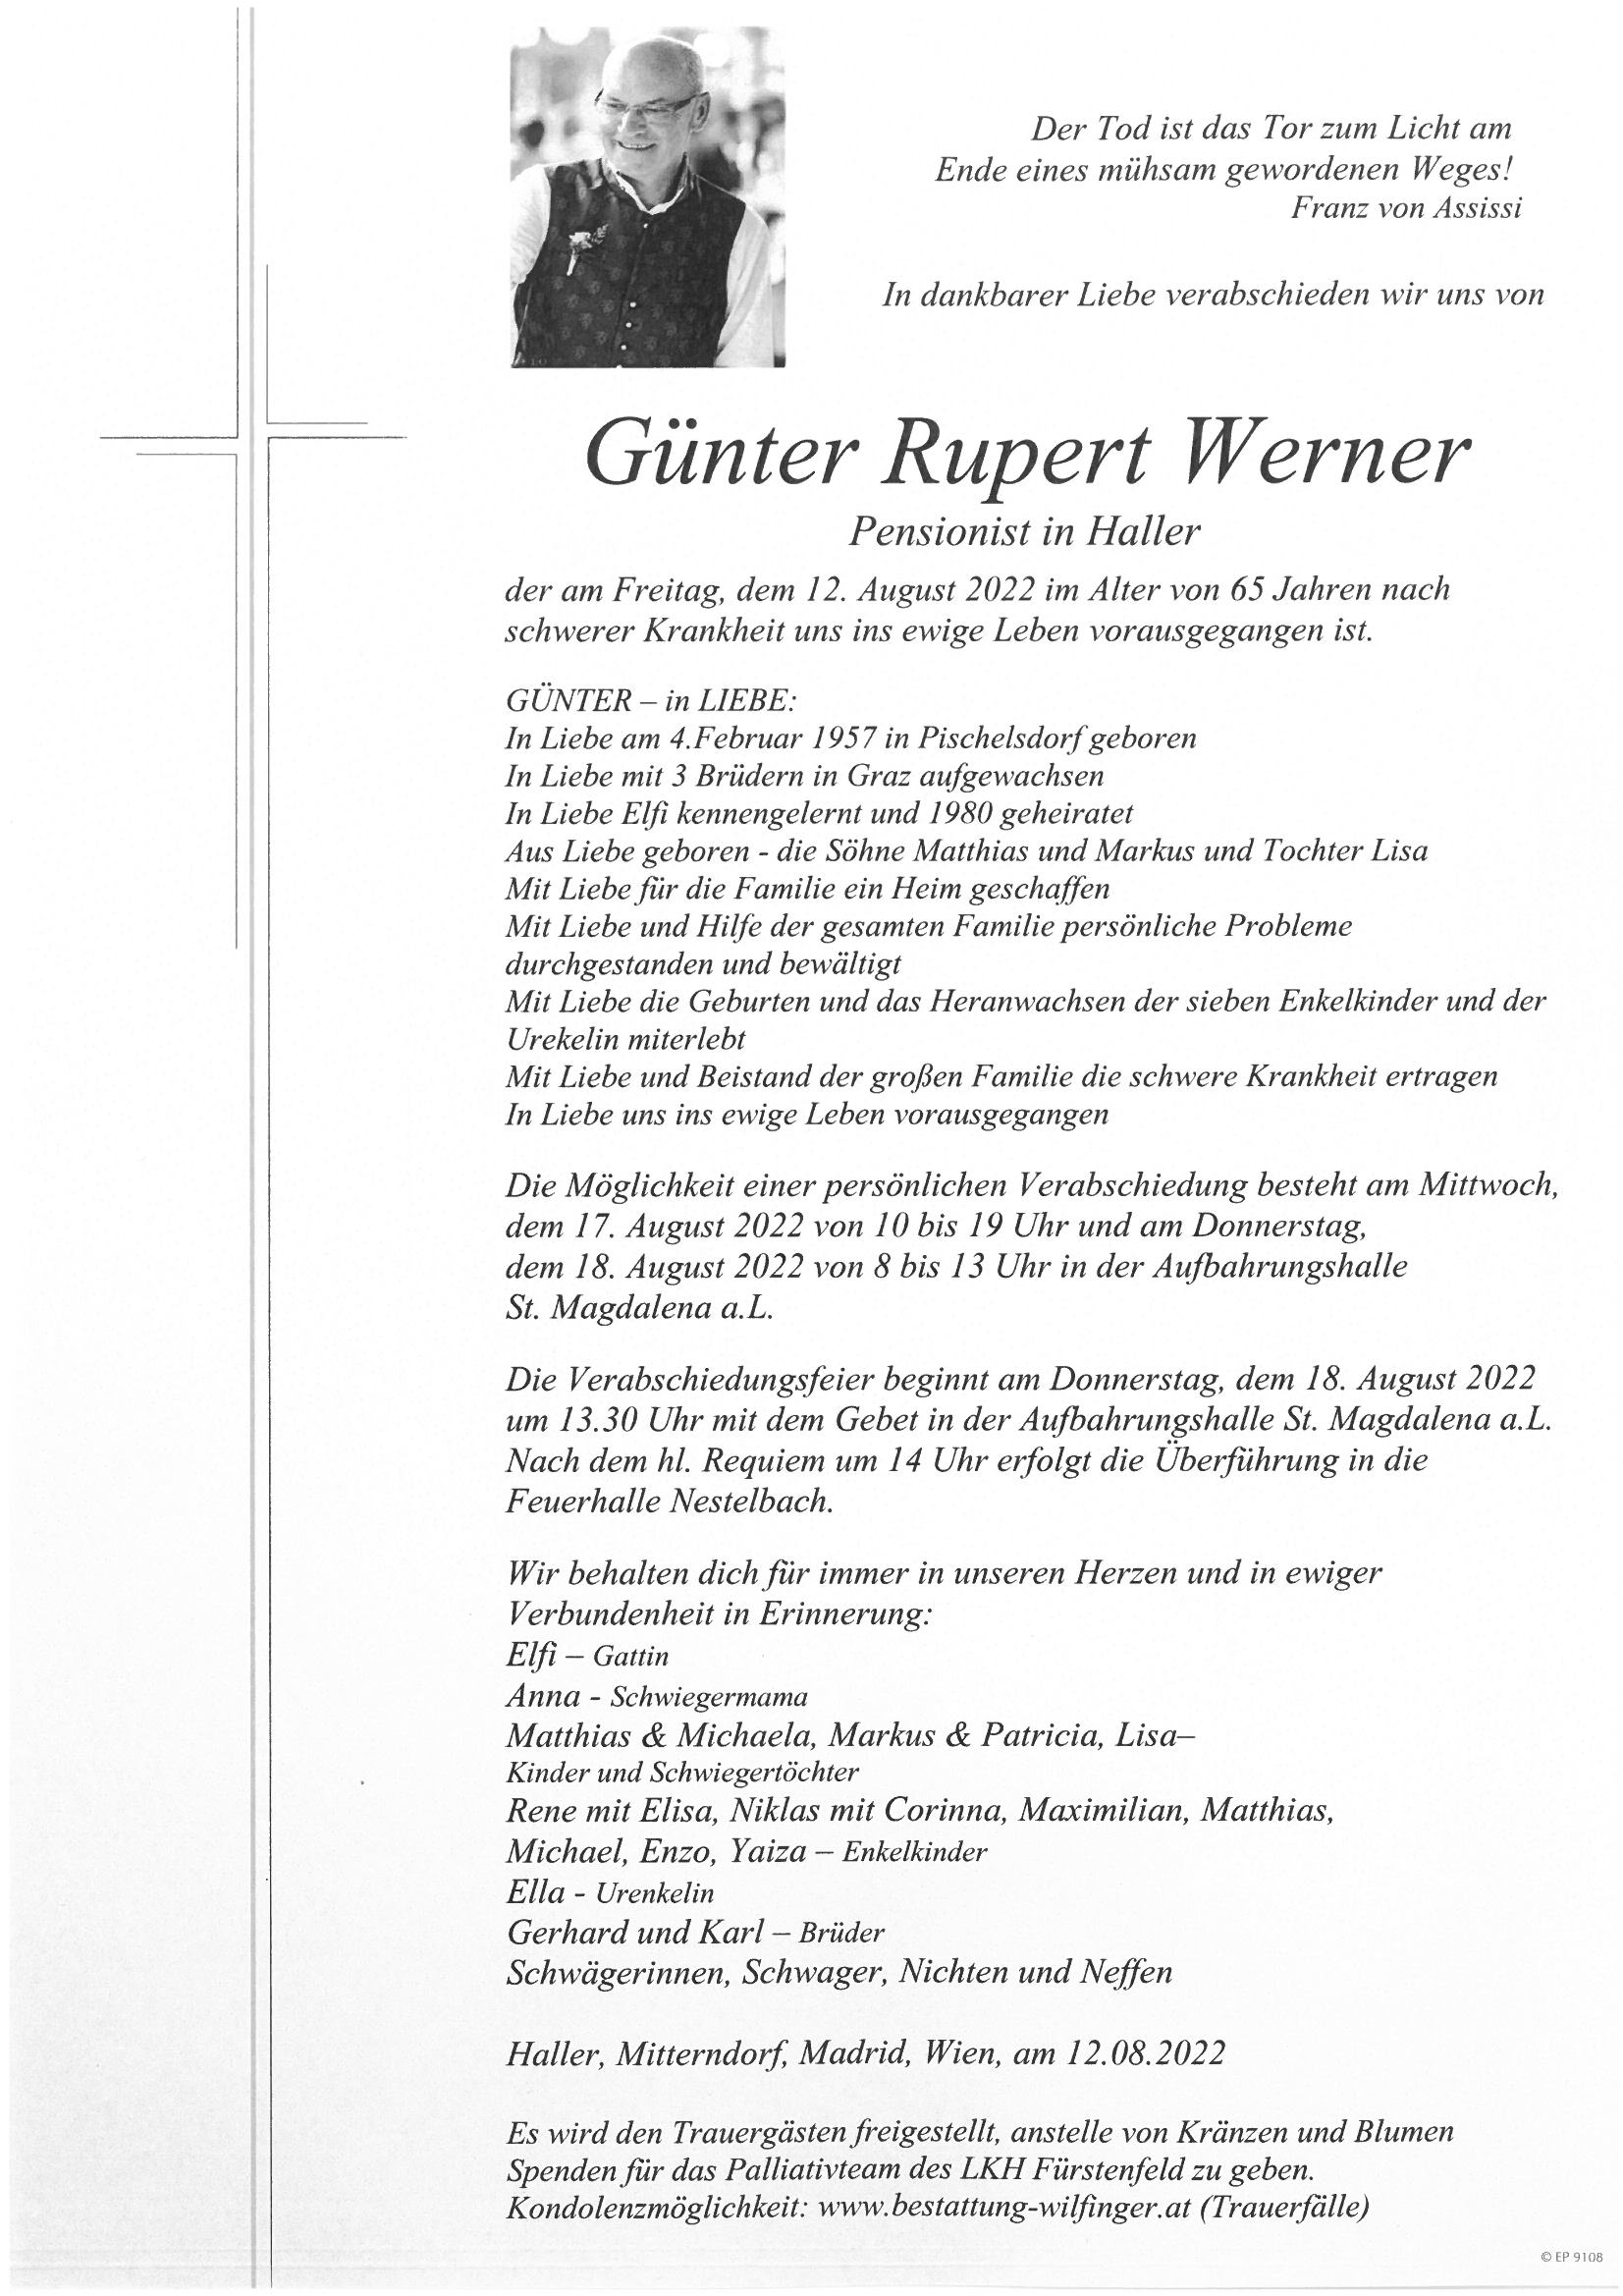 Günter Rupert Werner, Haller